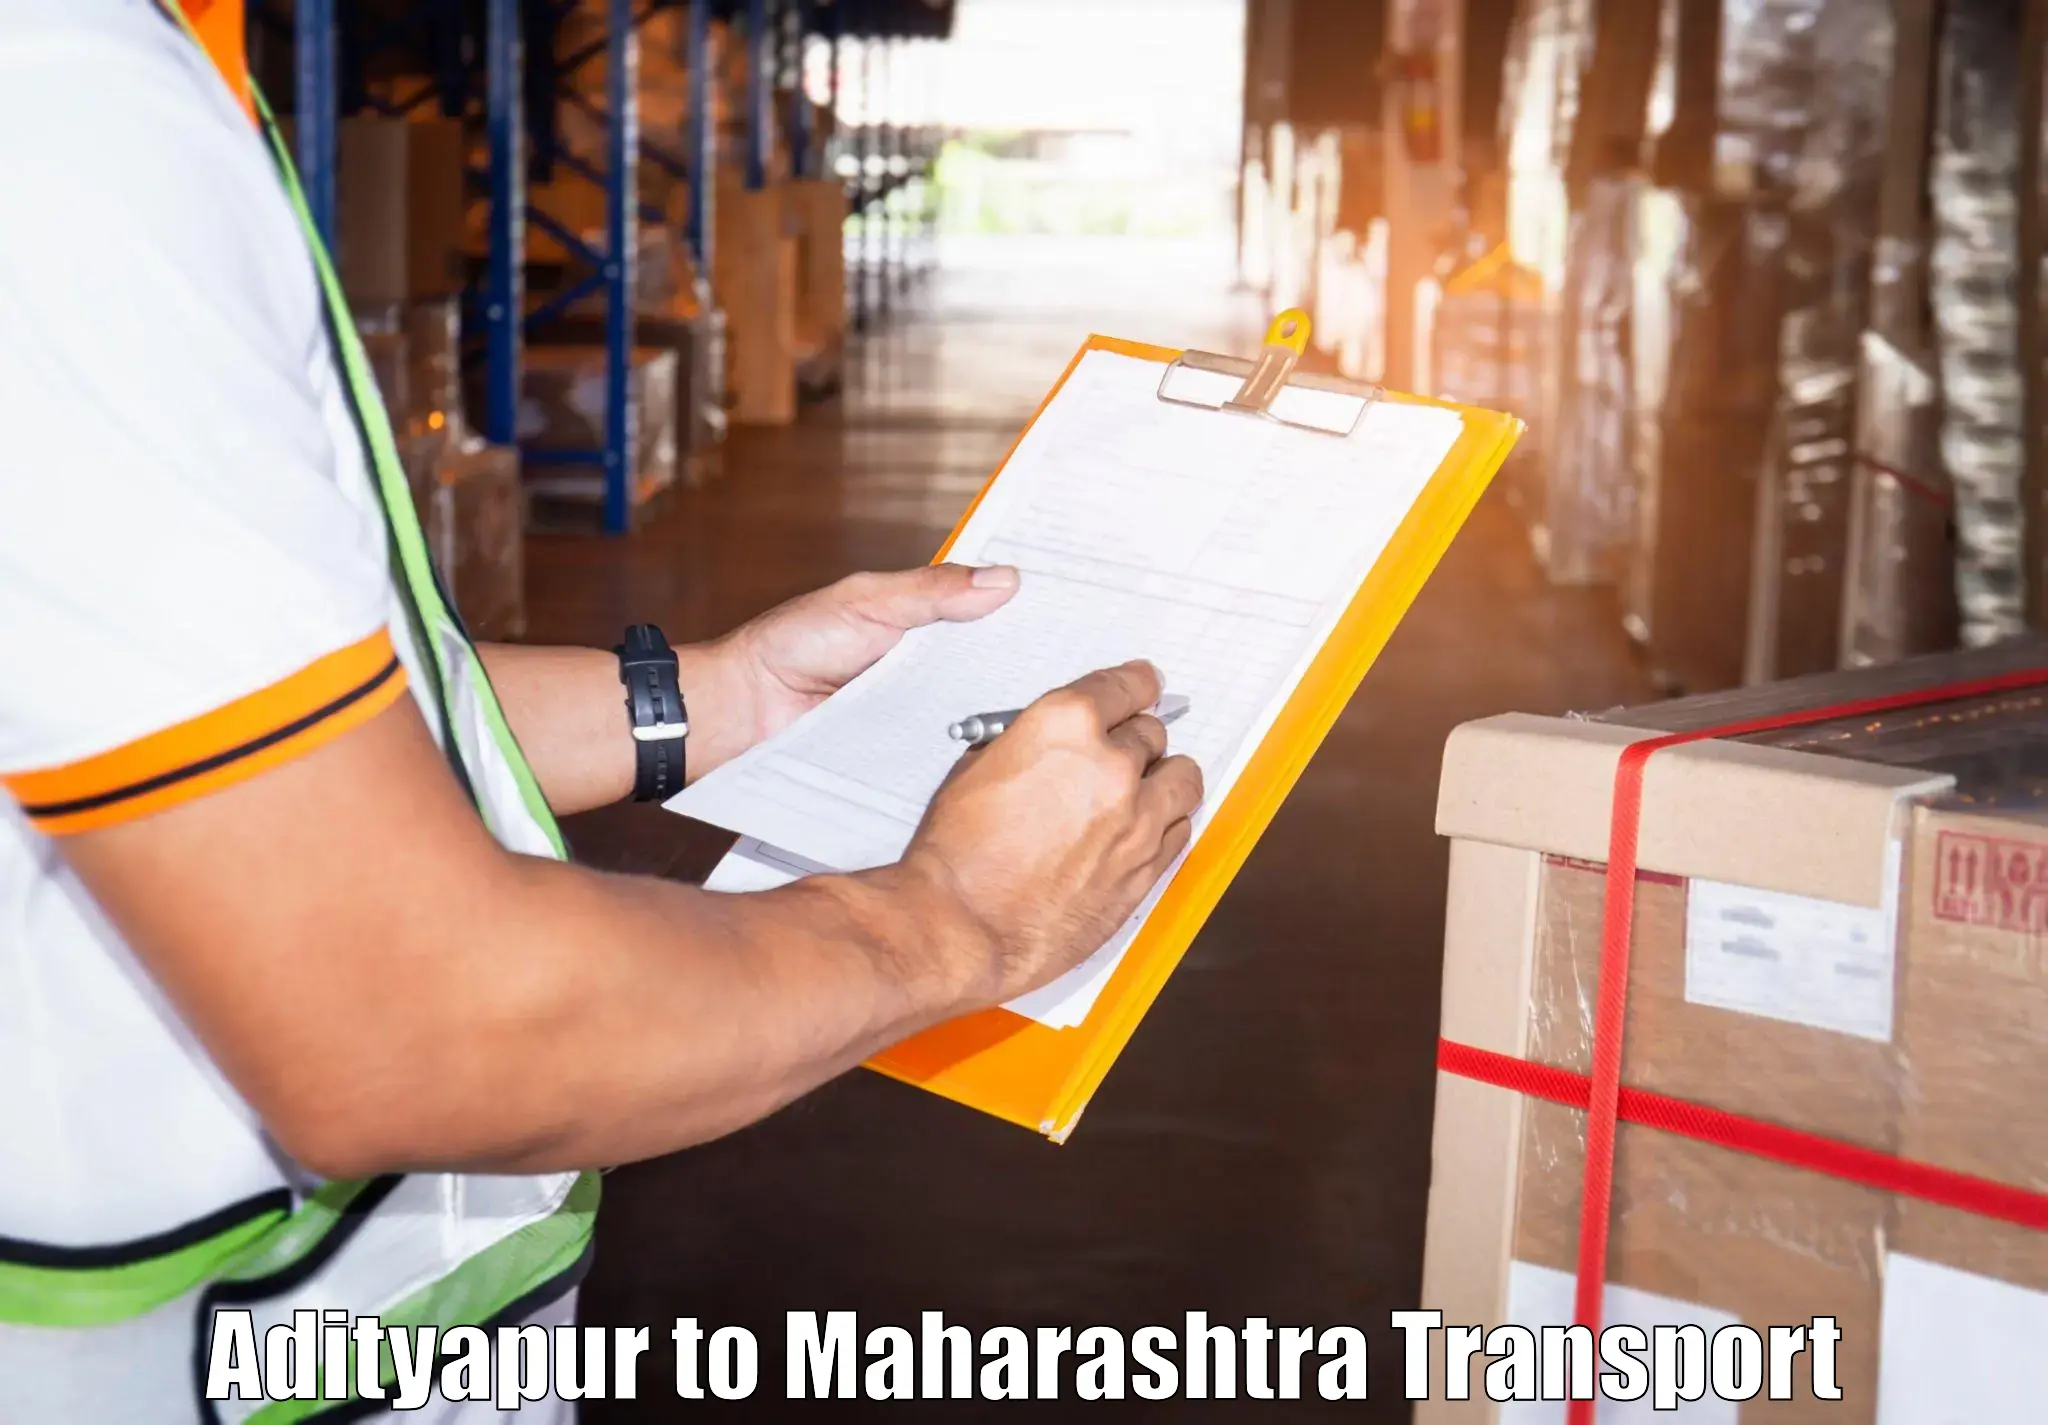 Container transport service Adityapur to Tata Institute of Social Sciences Mumbai